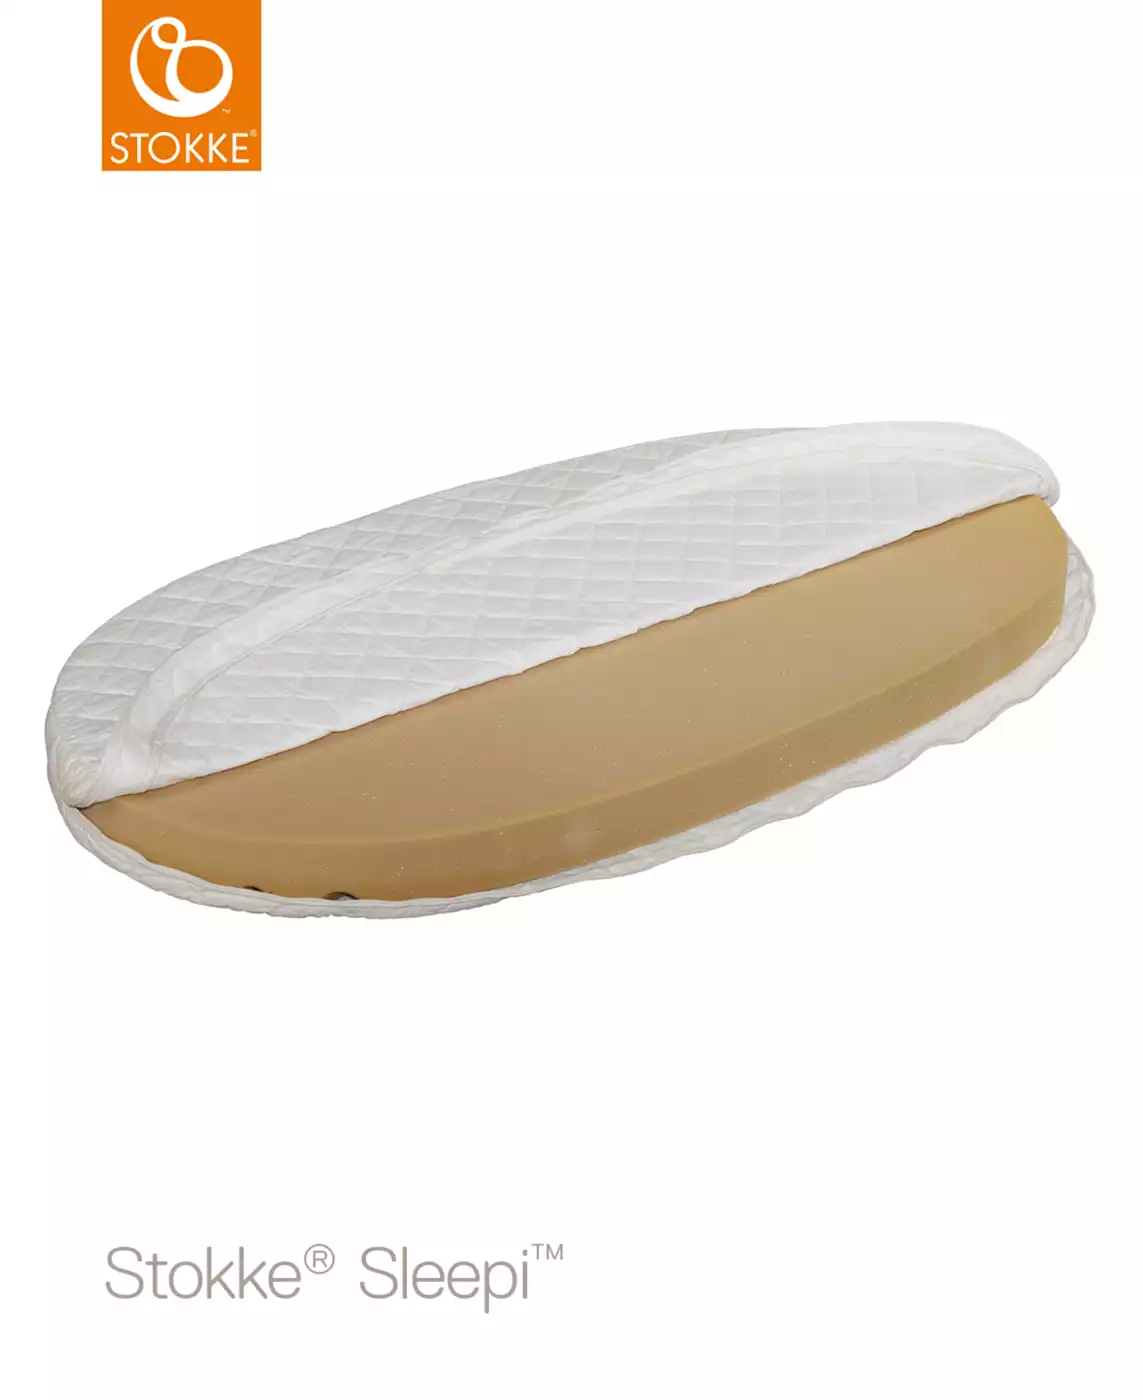 Stokke® Sleepi™ Matratze STOKKE Weiß 2000550993409 4